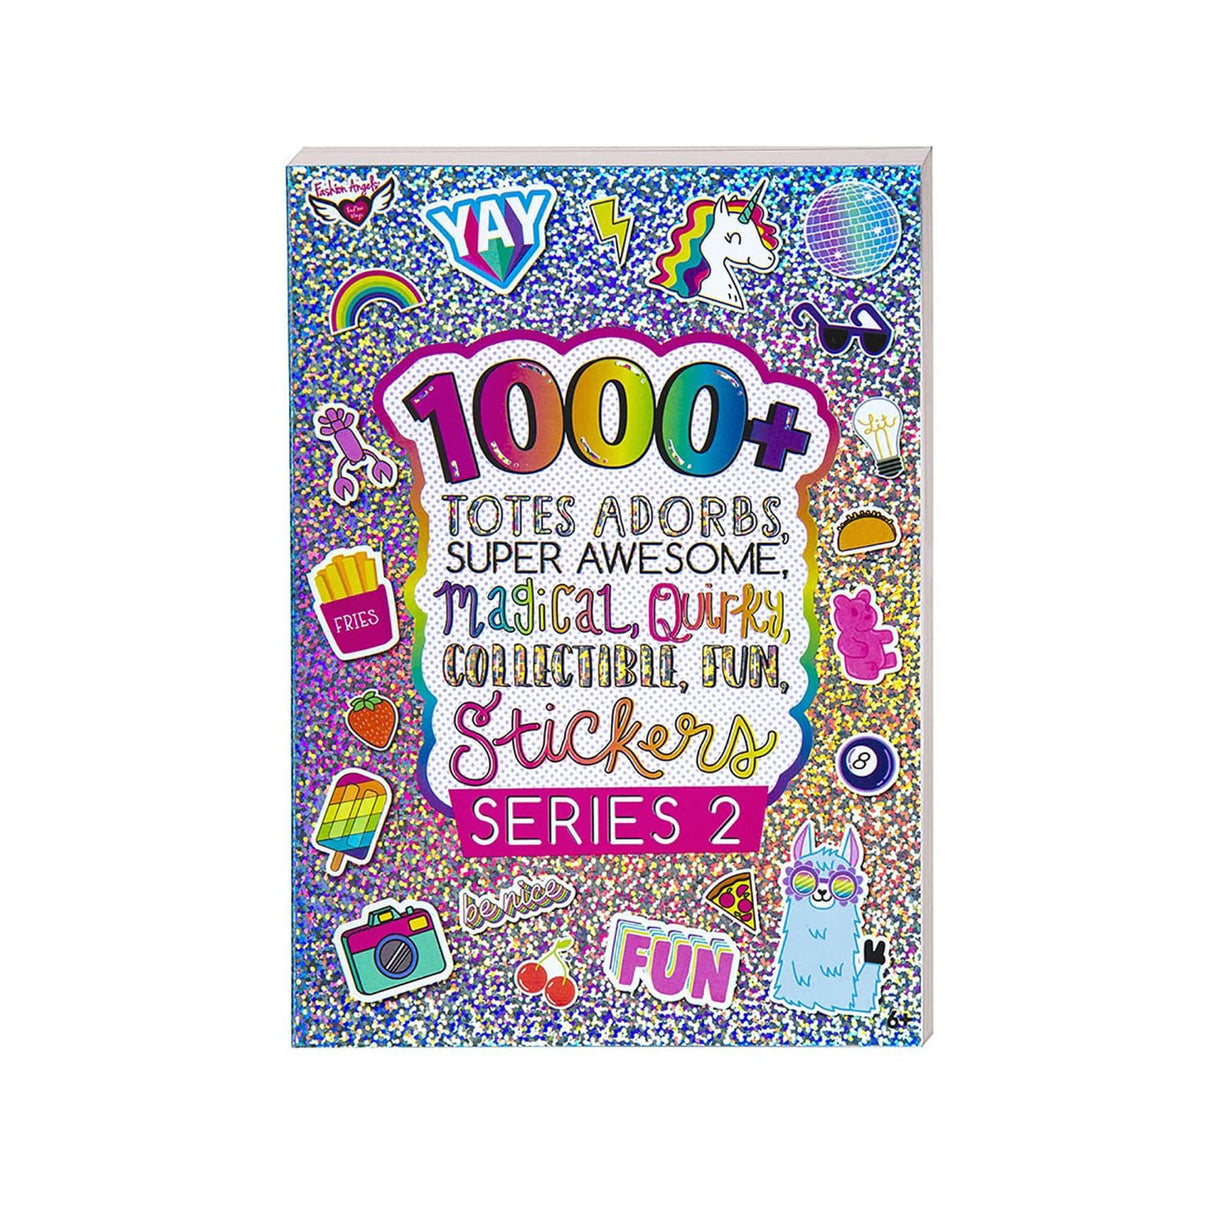 1000+ Totes Adorbs Sticker Book